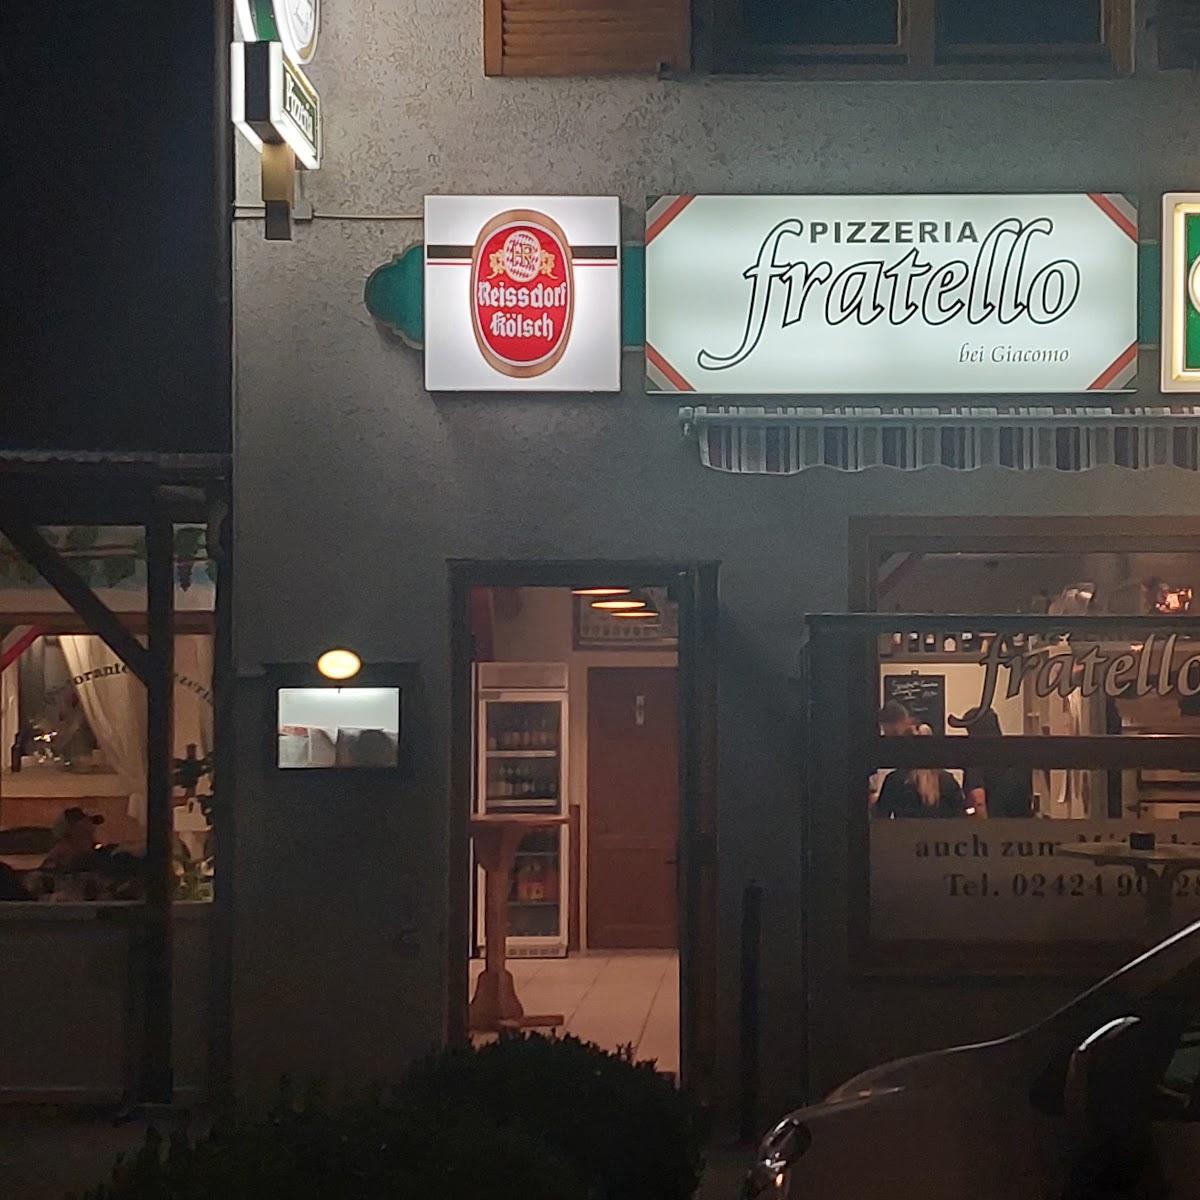 Restaurant "Pizzeria fratello" in Vettweiß